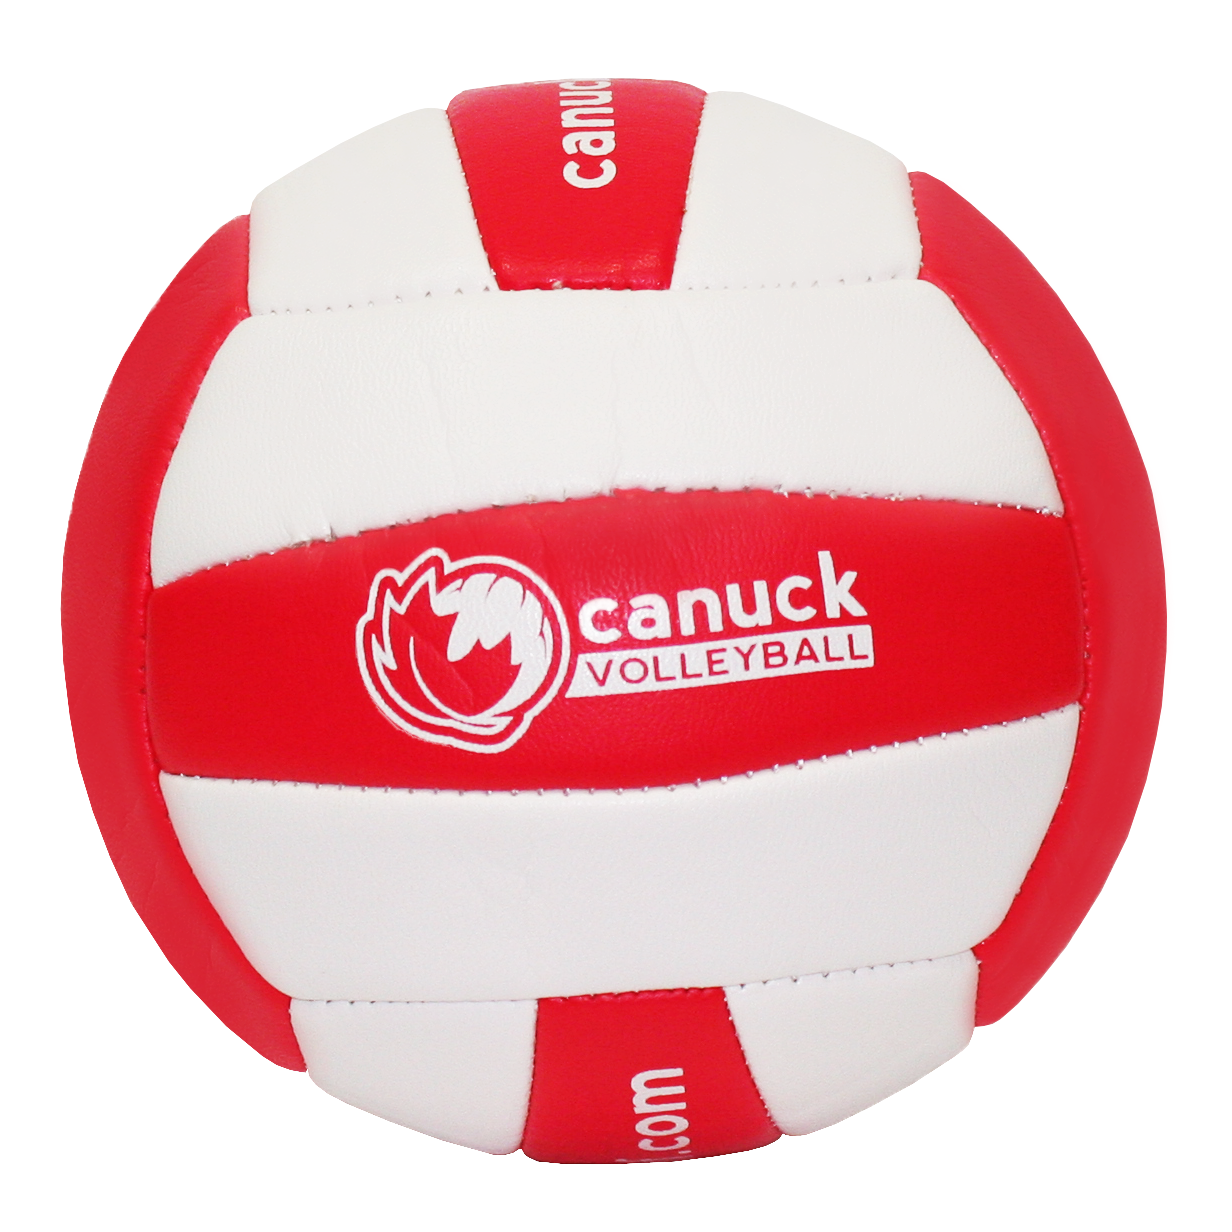 Canuckstuff 5" Mini Volleyball